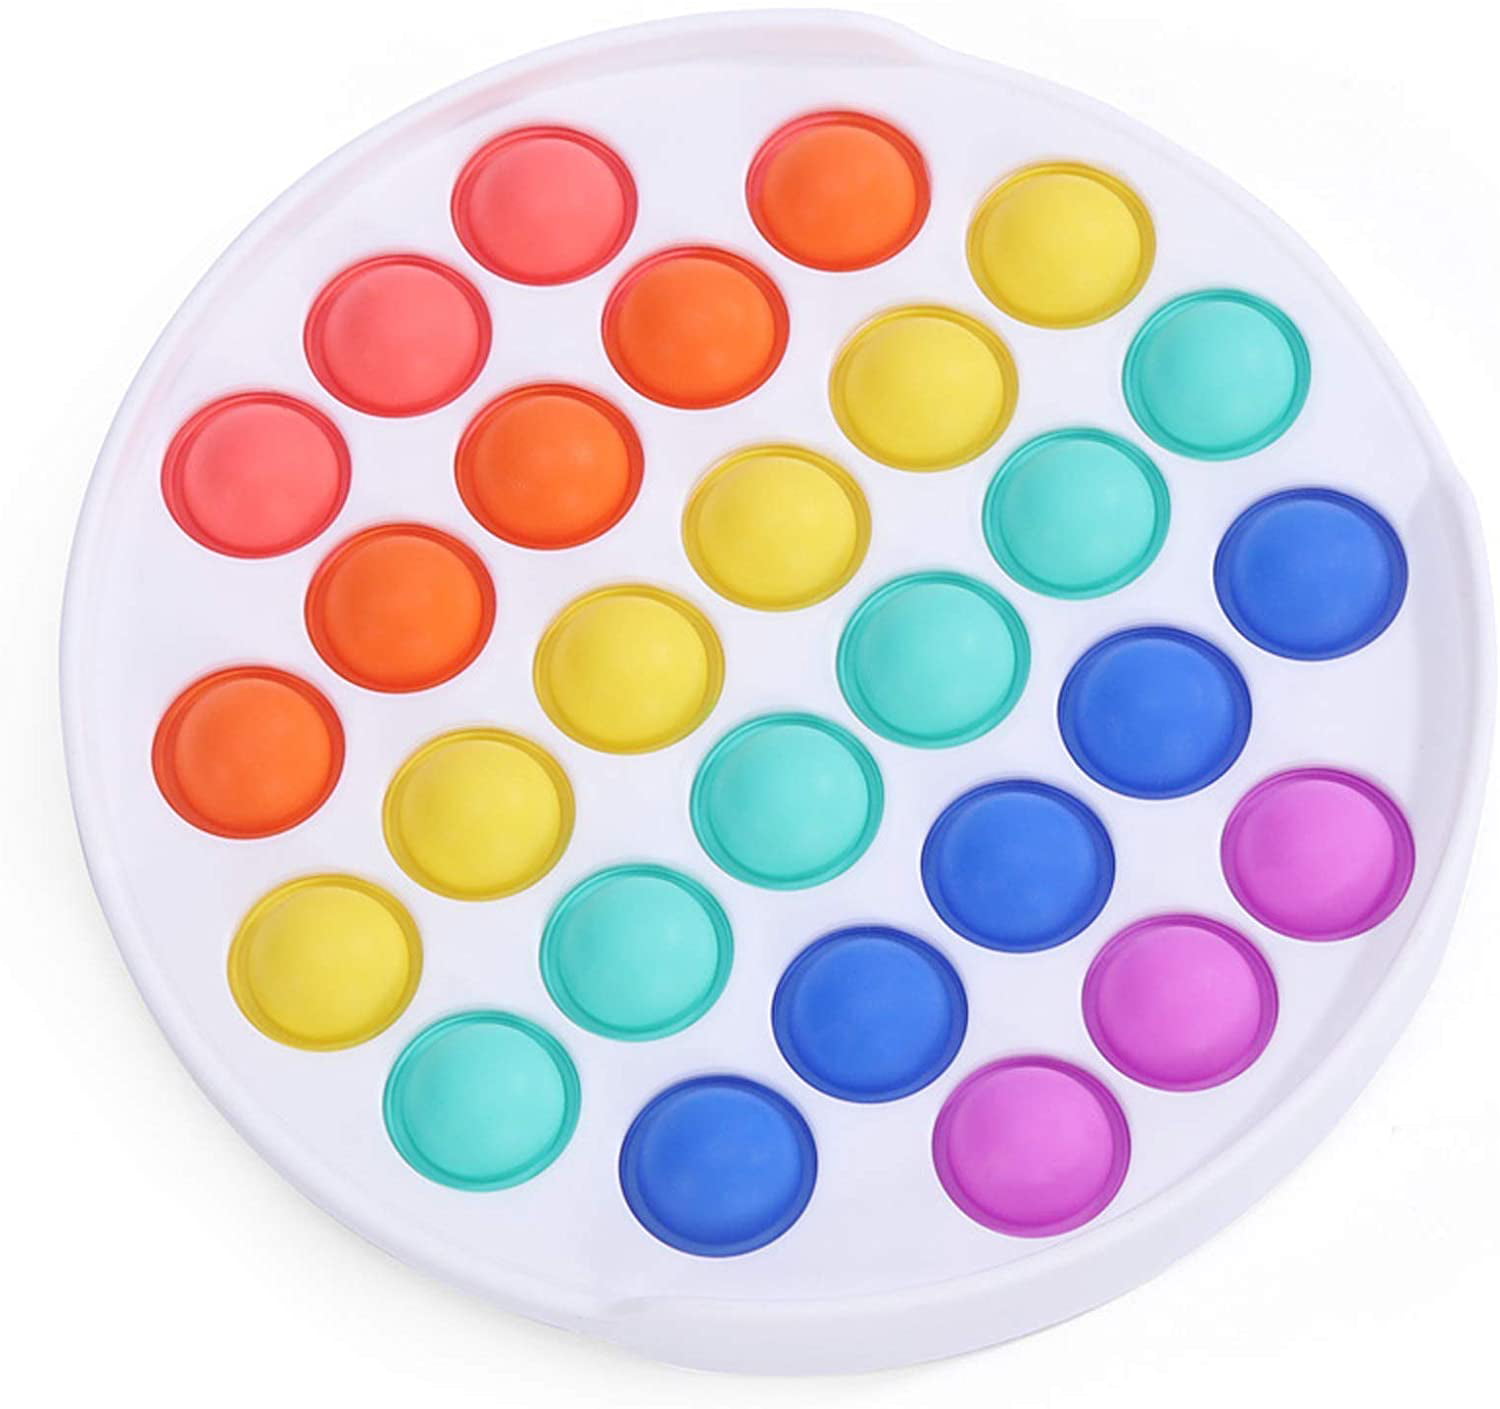 Details about   Push Pop for it Bubble Fidget Toy Sensory Stress Relief Special Needs Autism UK 